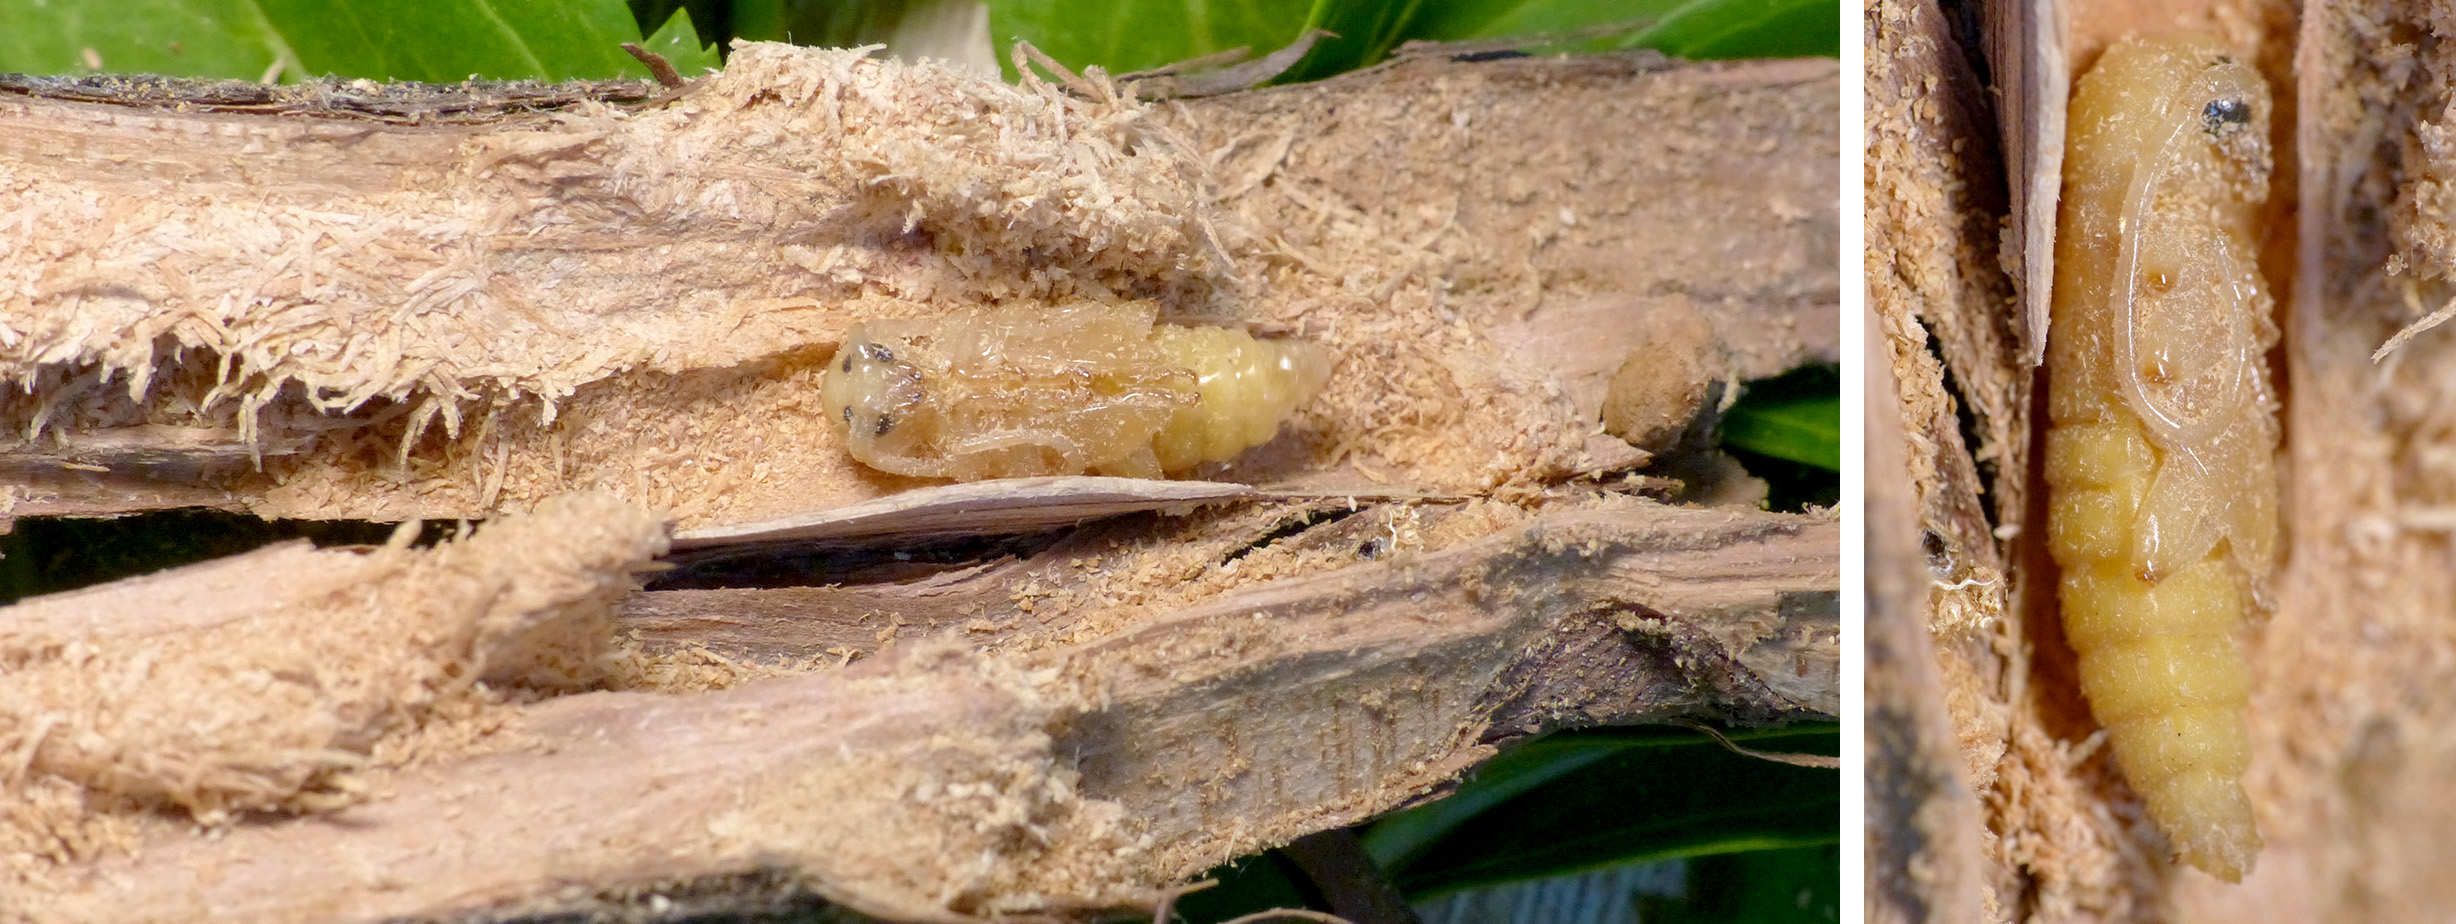 Trichoferus antonioui - larva